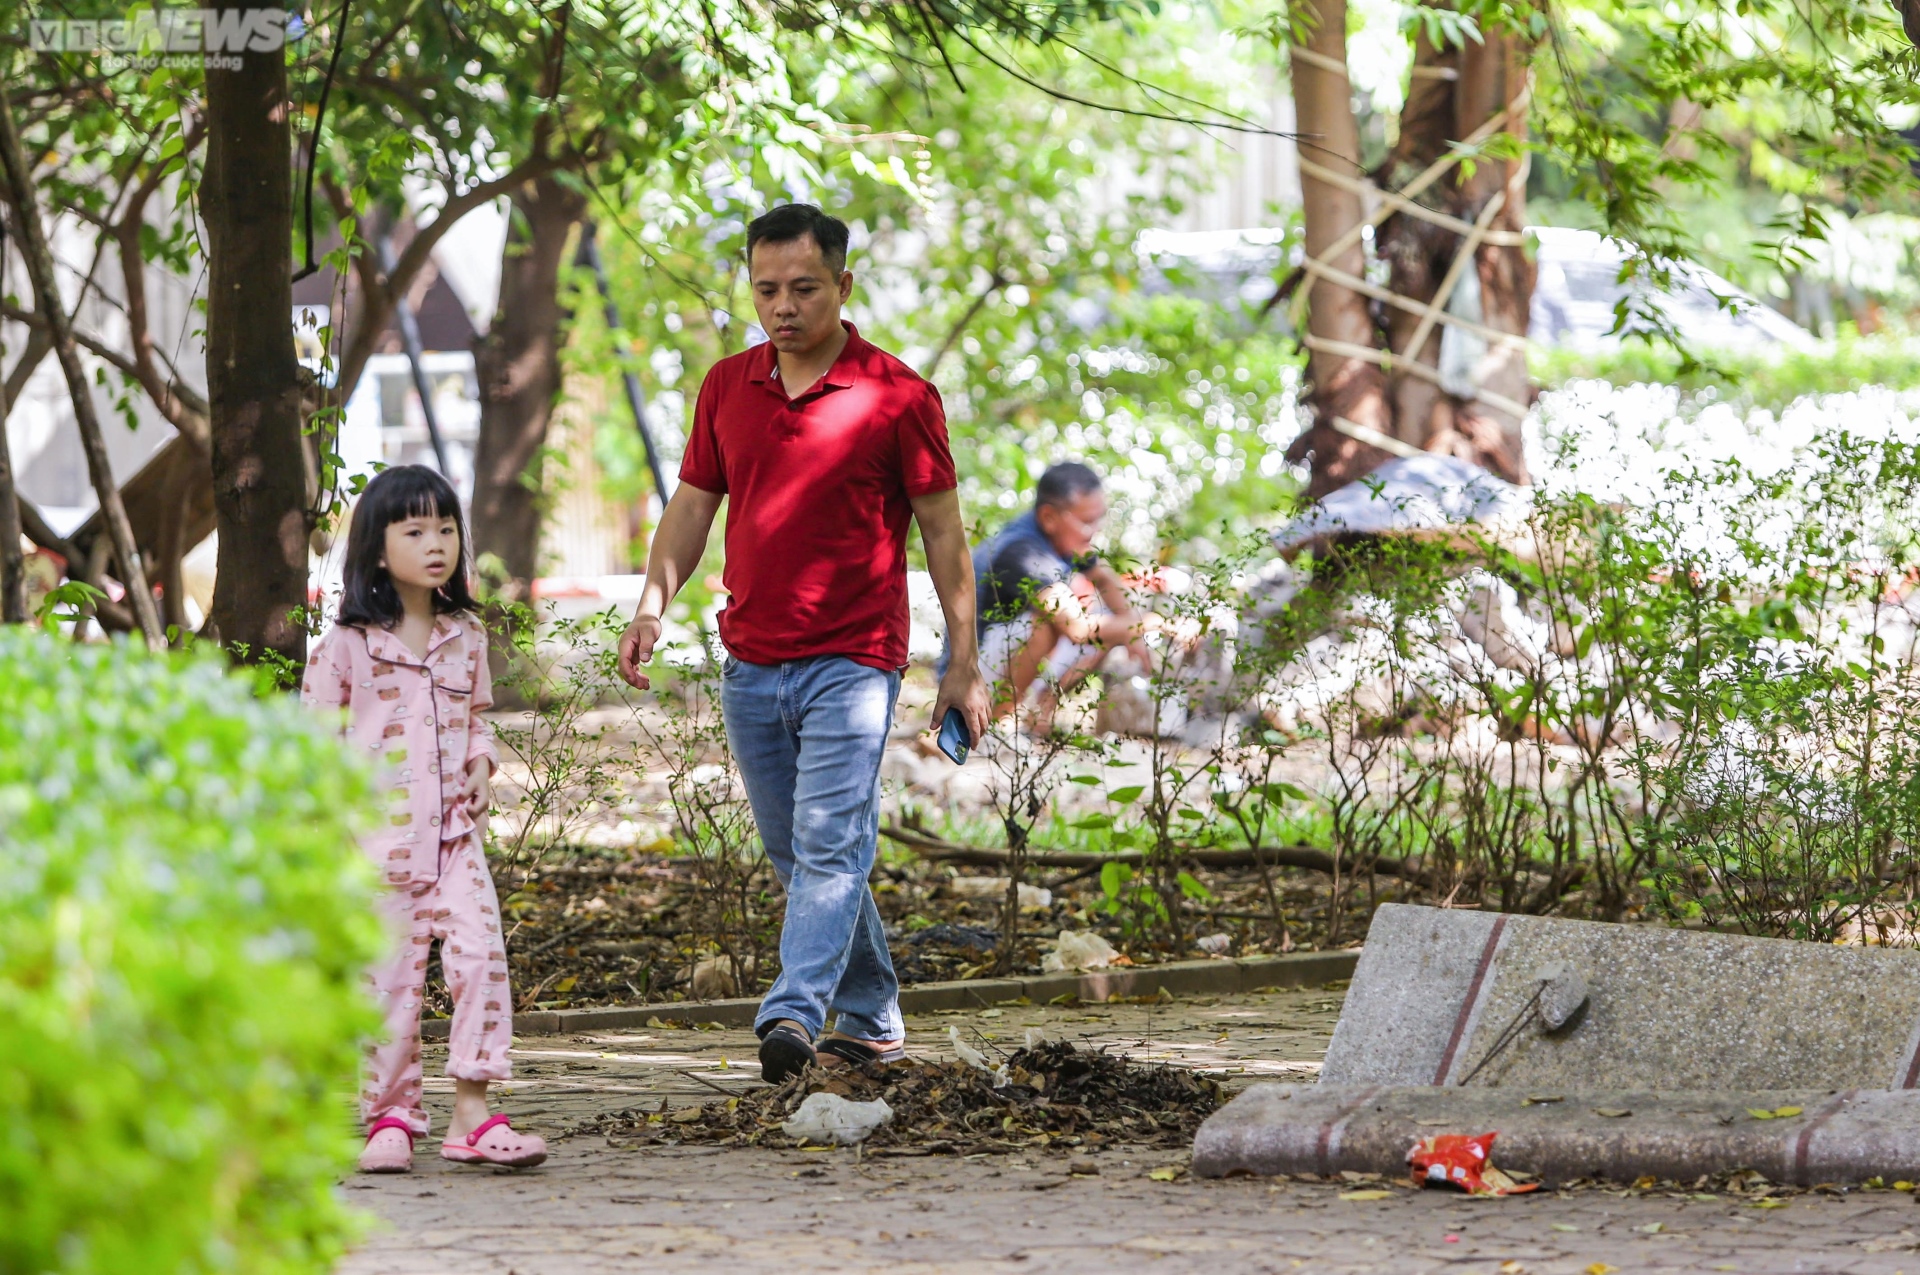 Vườn hoa 52 tỷ đồng ở Hà Nội xuống cấp trầm trọng, thành nơi đổ rác - Ảnh 12.